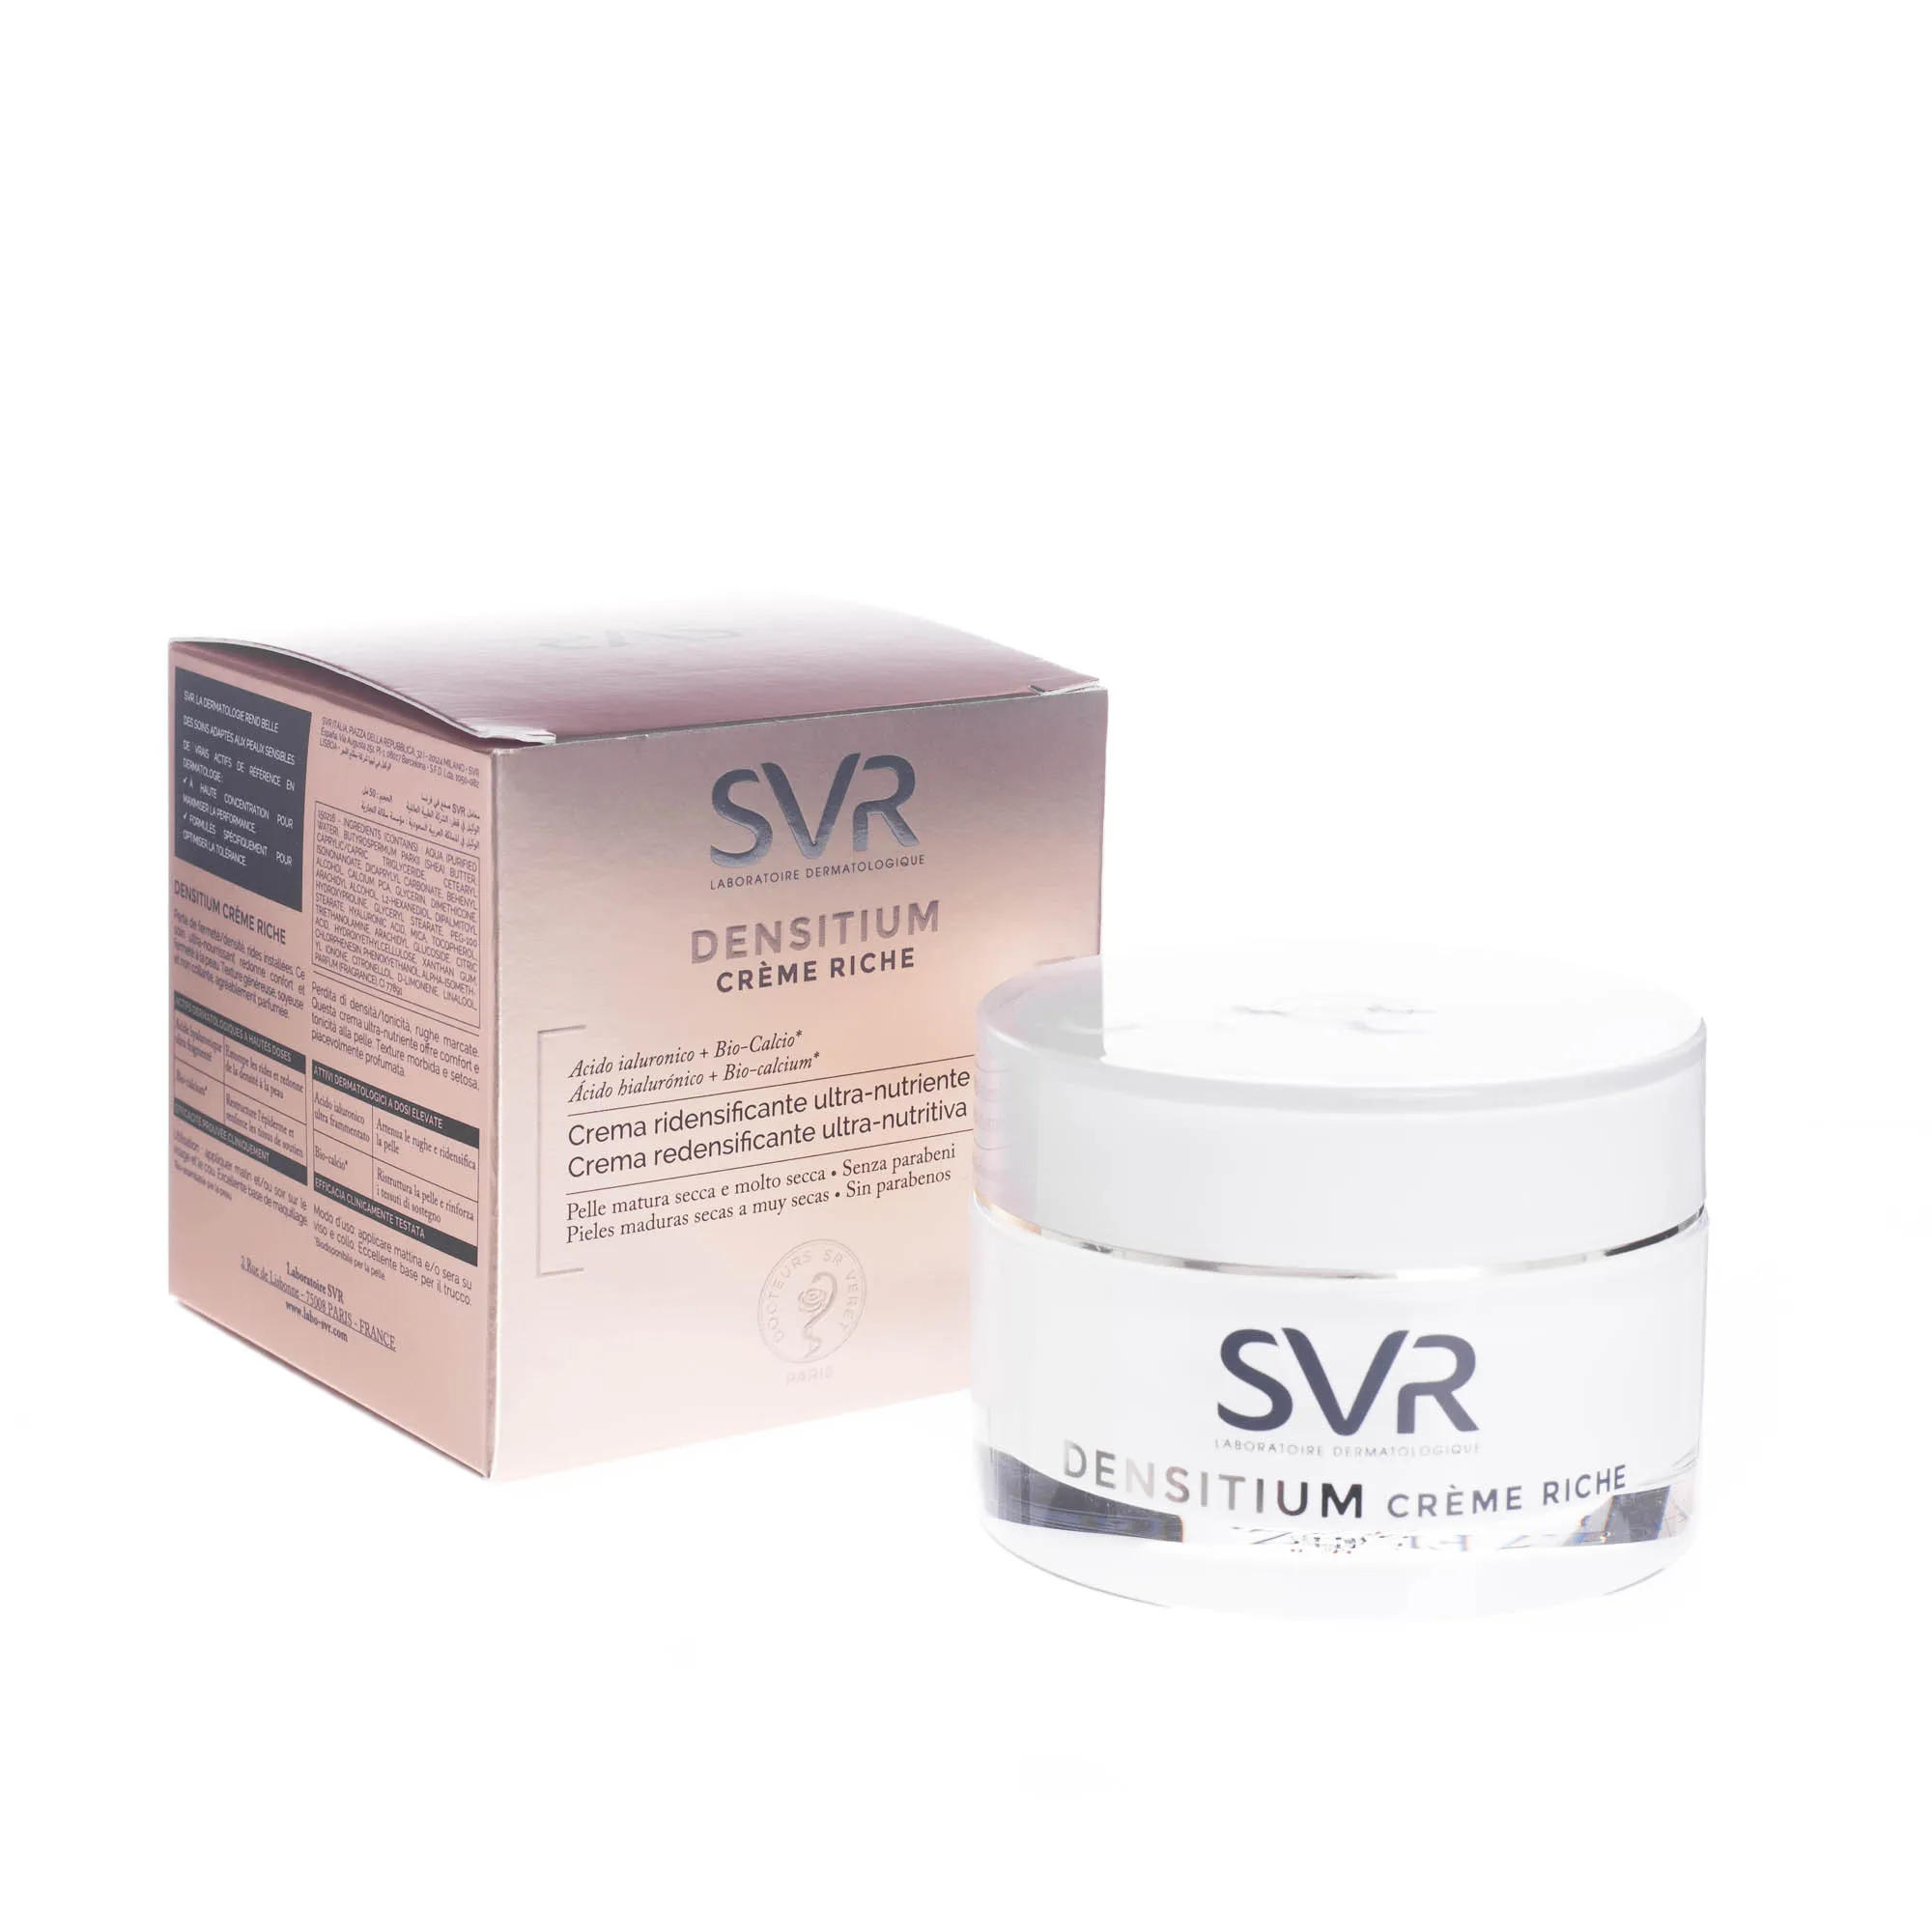 SVR Densitium Creme Riche ultra odżywczy krem przywracający gęstość skóry 50 ml 